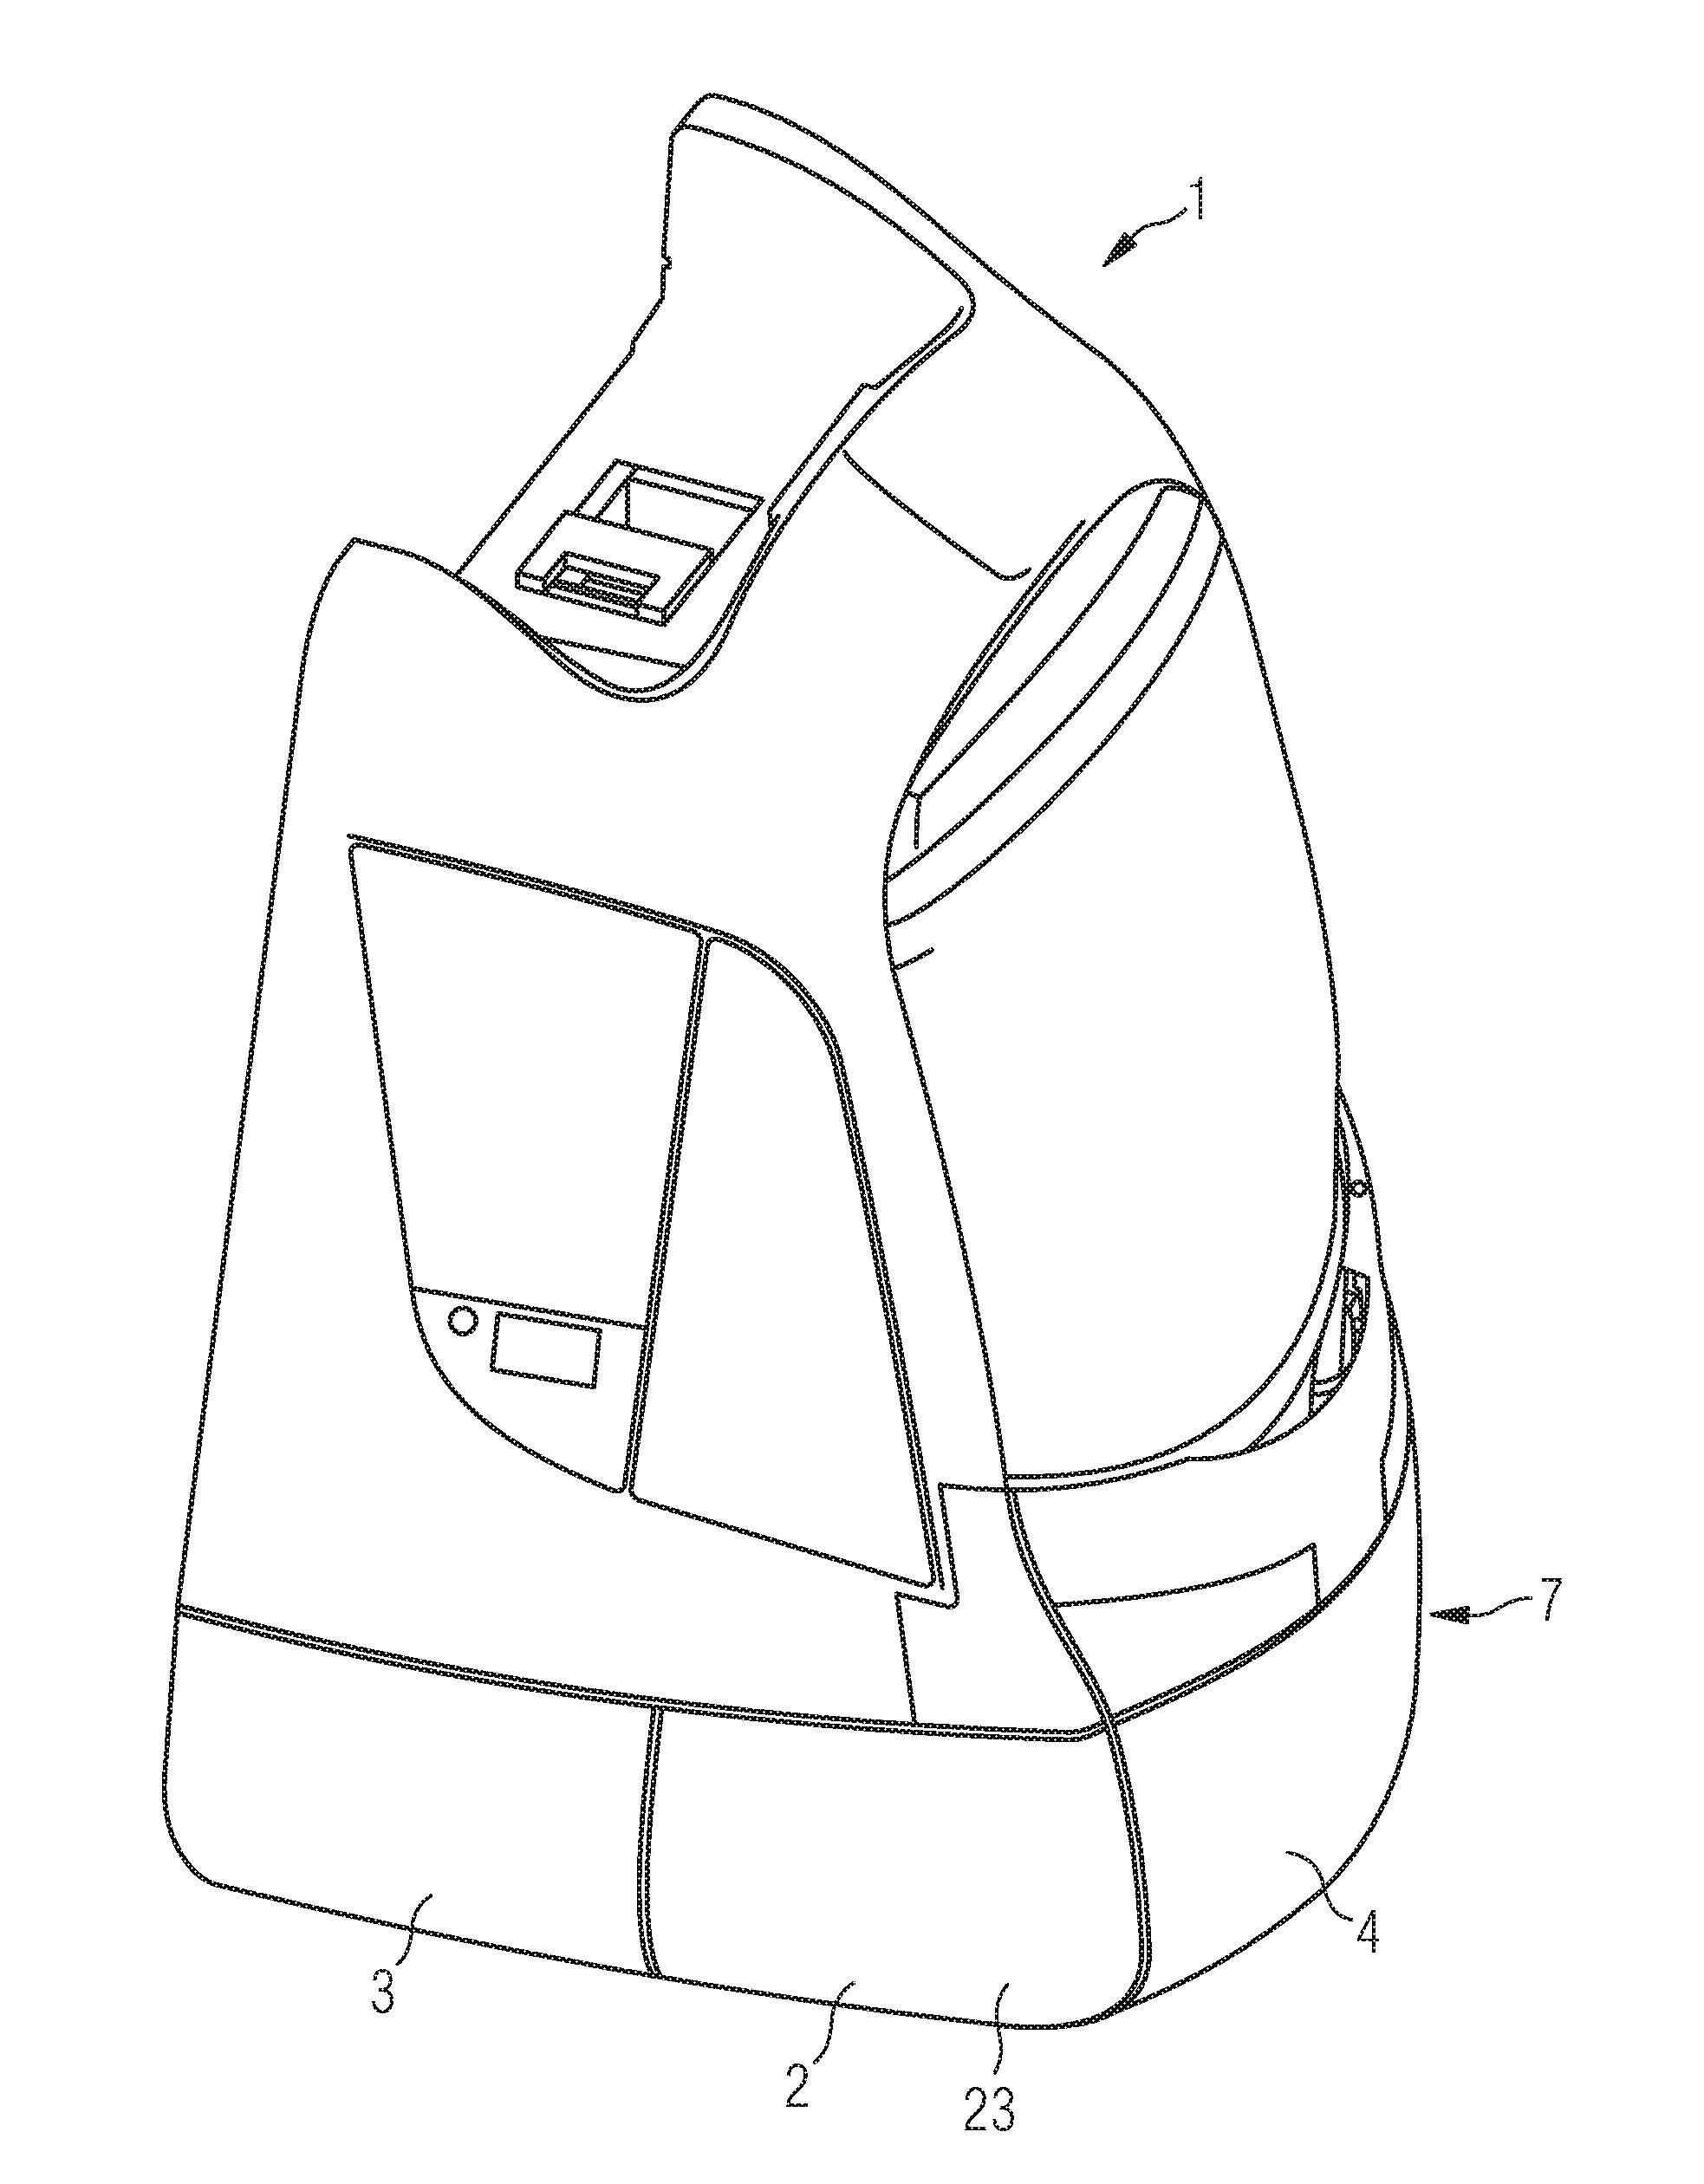 Crash-resistant front apron for a rail vehicle